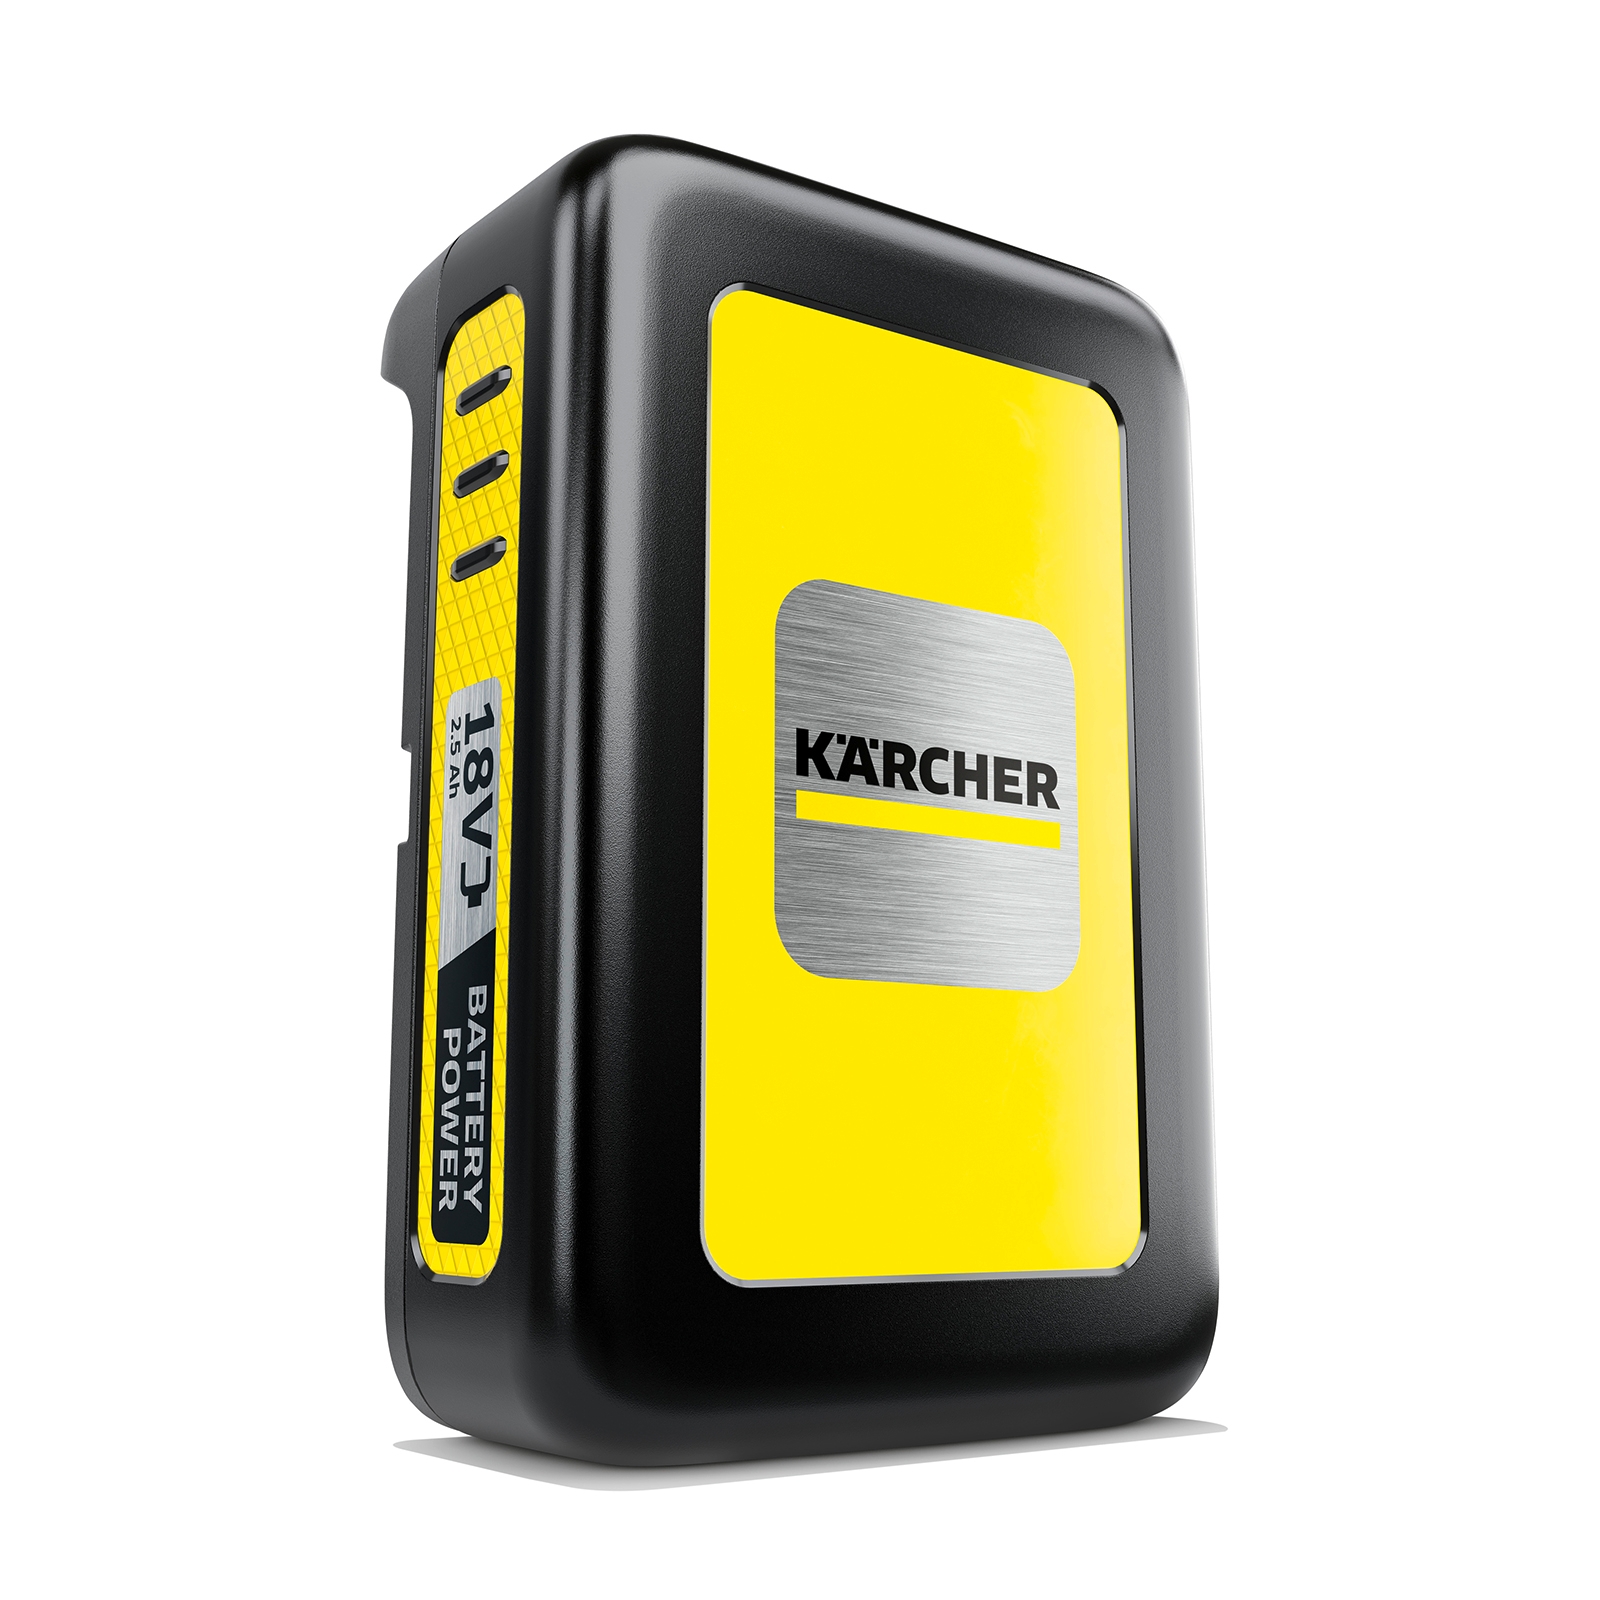 Karcher 18V / 2.5Ah Battery